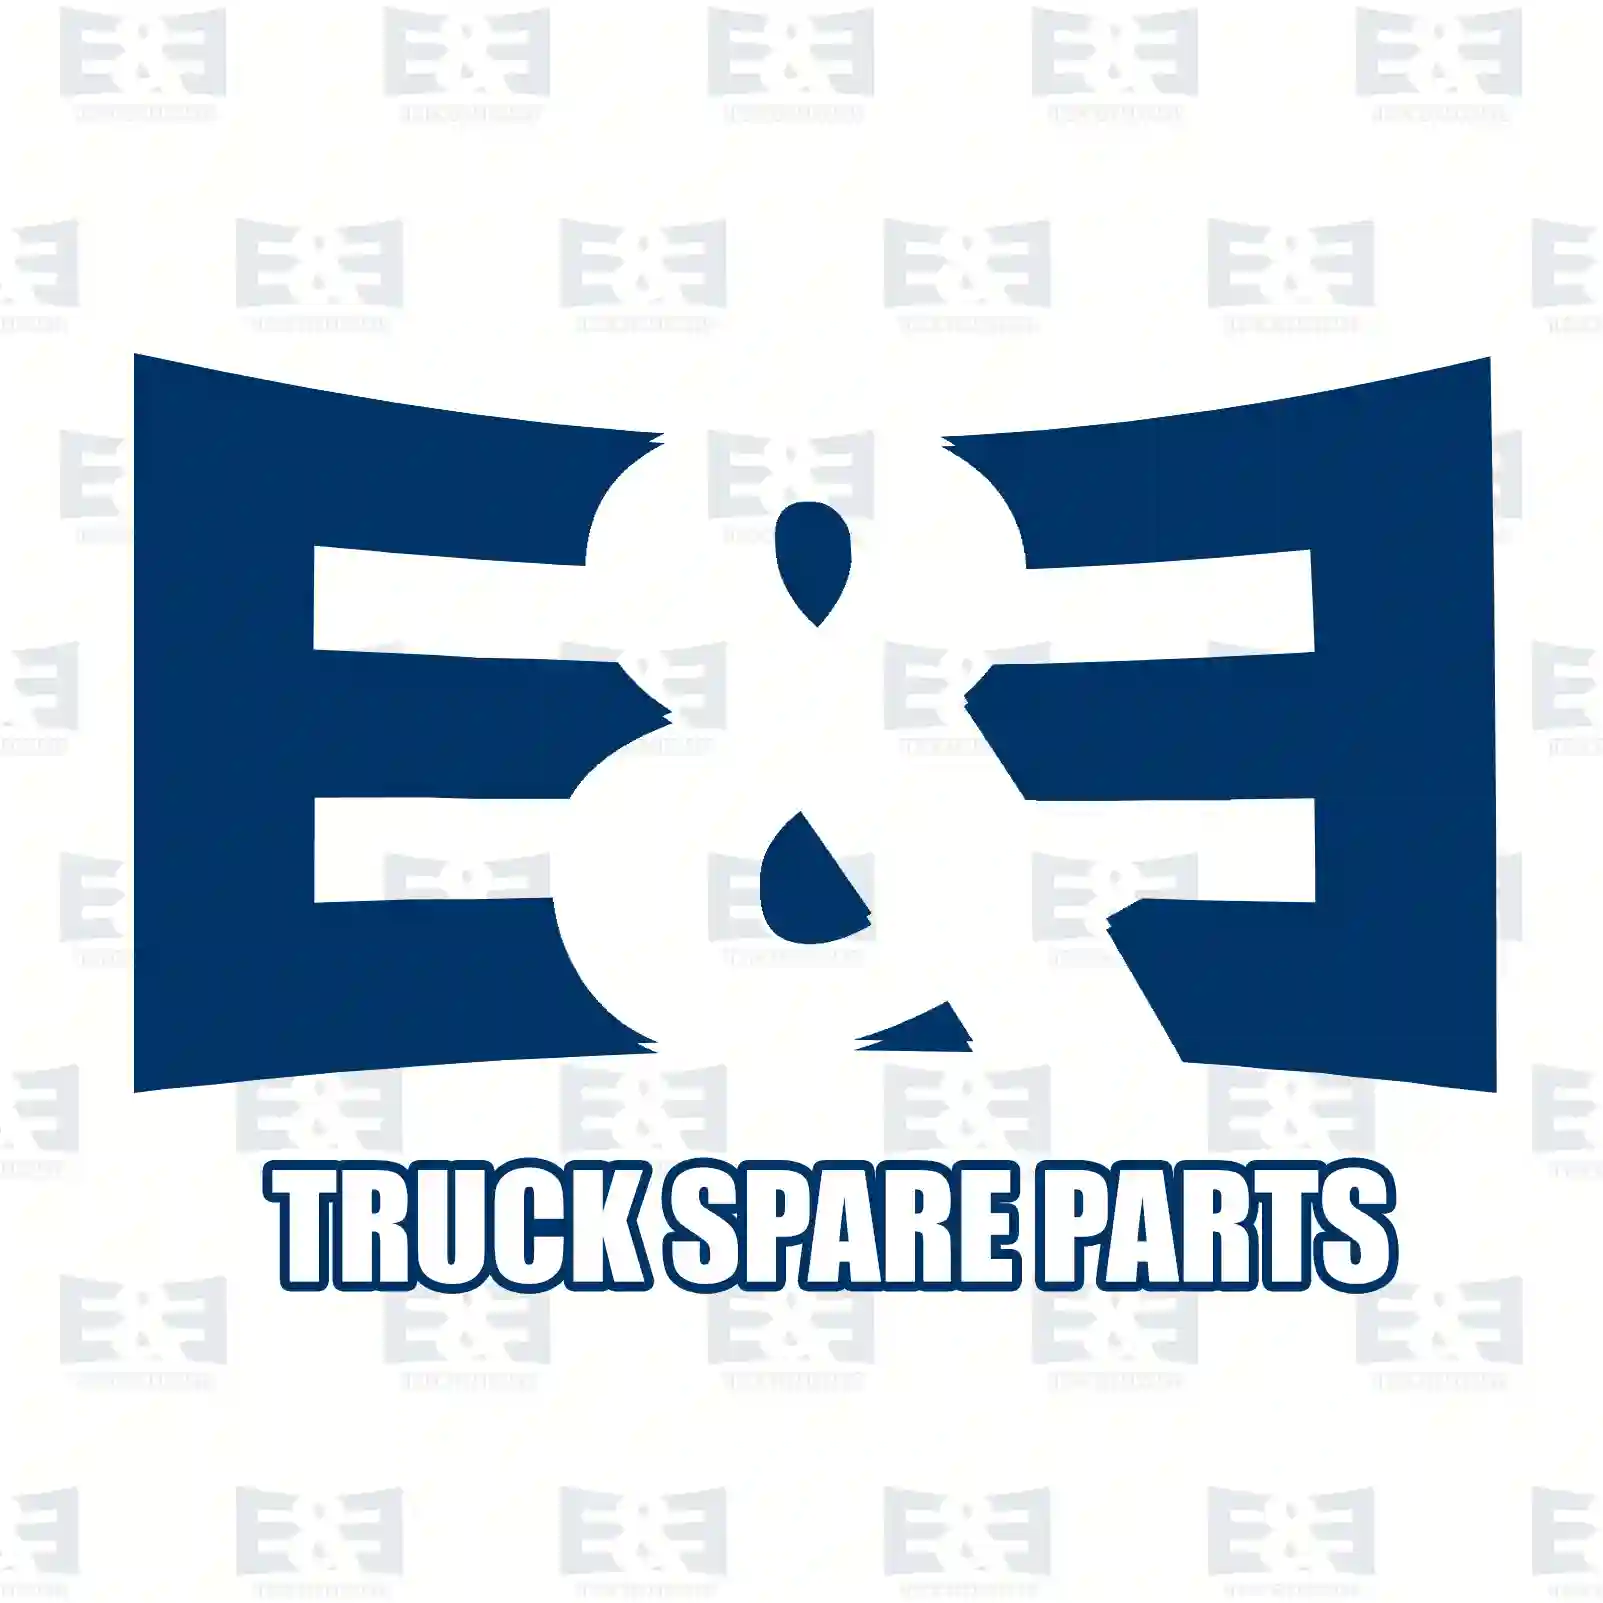 Propeller shaft, 2E2276673, 2E0521163F, 2E0521163Q, 2E0521163T, 2E0521293, 2E0521293M ||  2E2276673 E&E Truck Spare Parts | Truck Spare Parts, Auotomotive Spare Parts Propeller shaft, 2E2276673, 2E0521163F, 2E0521163Q, 2E0521163T, 2E0521293, 2E0521293M ||  2E2276673 E&E Truck Spare Parts | Truck Spare Parts, Auotomotive Spare Parts